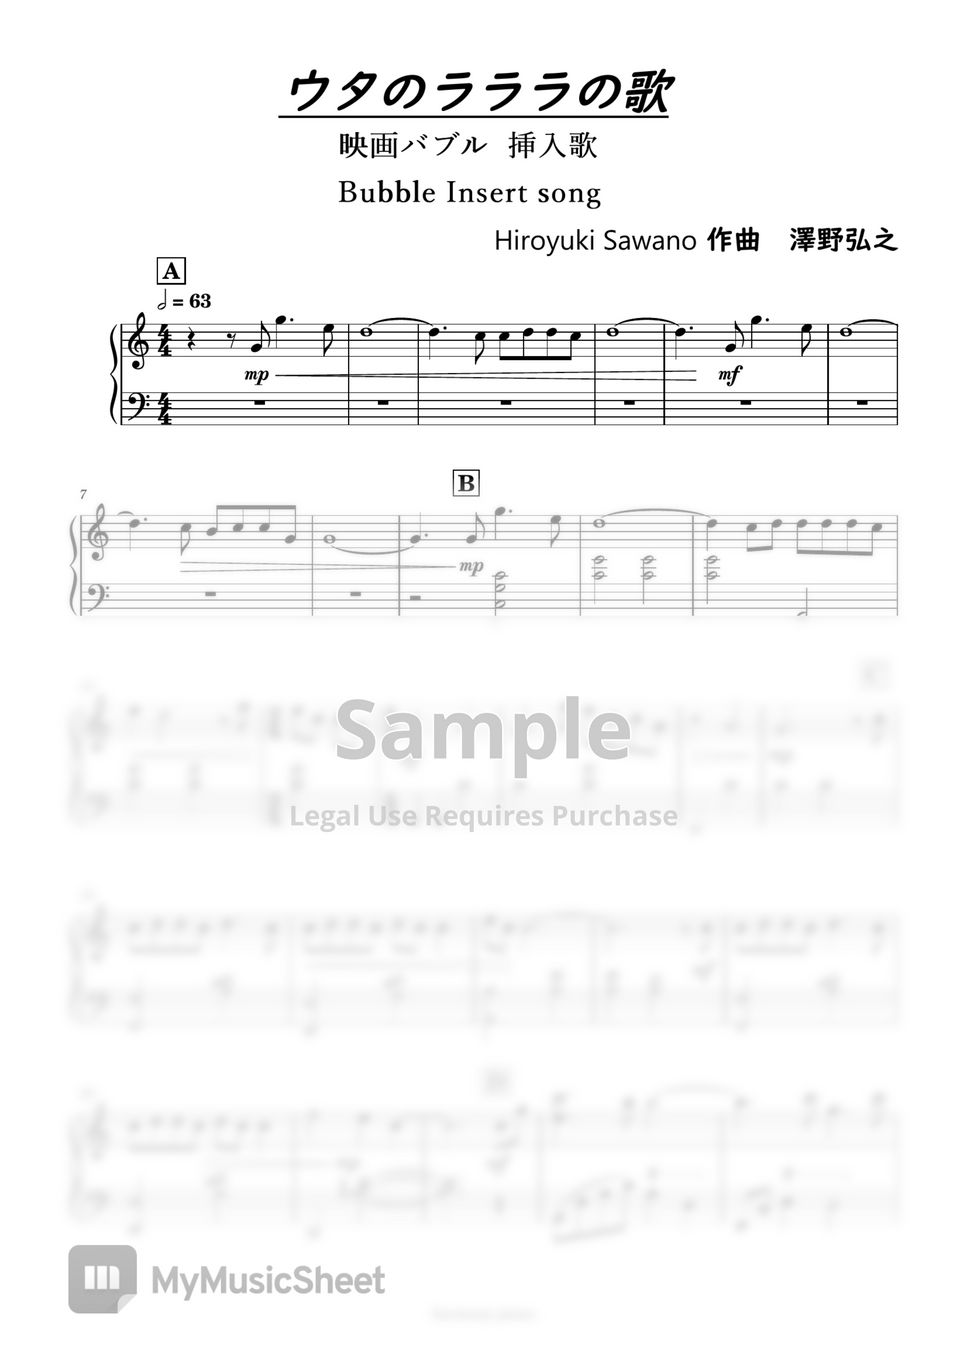 Uta - Bubble Insert song (Sawano Hiroyuki) by harmony piano